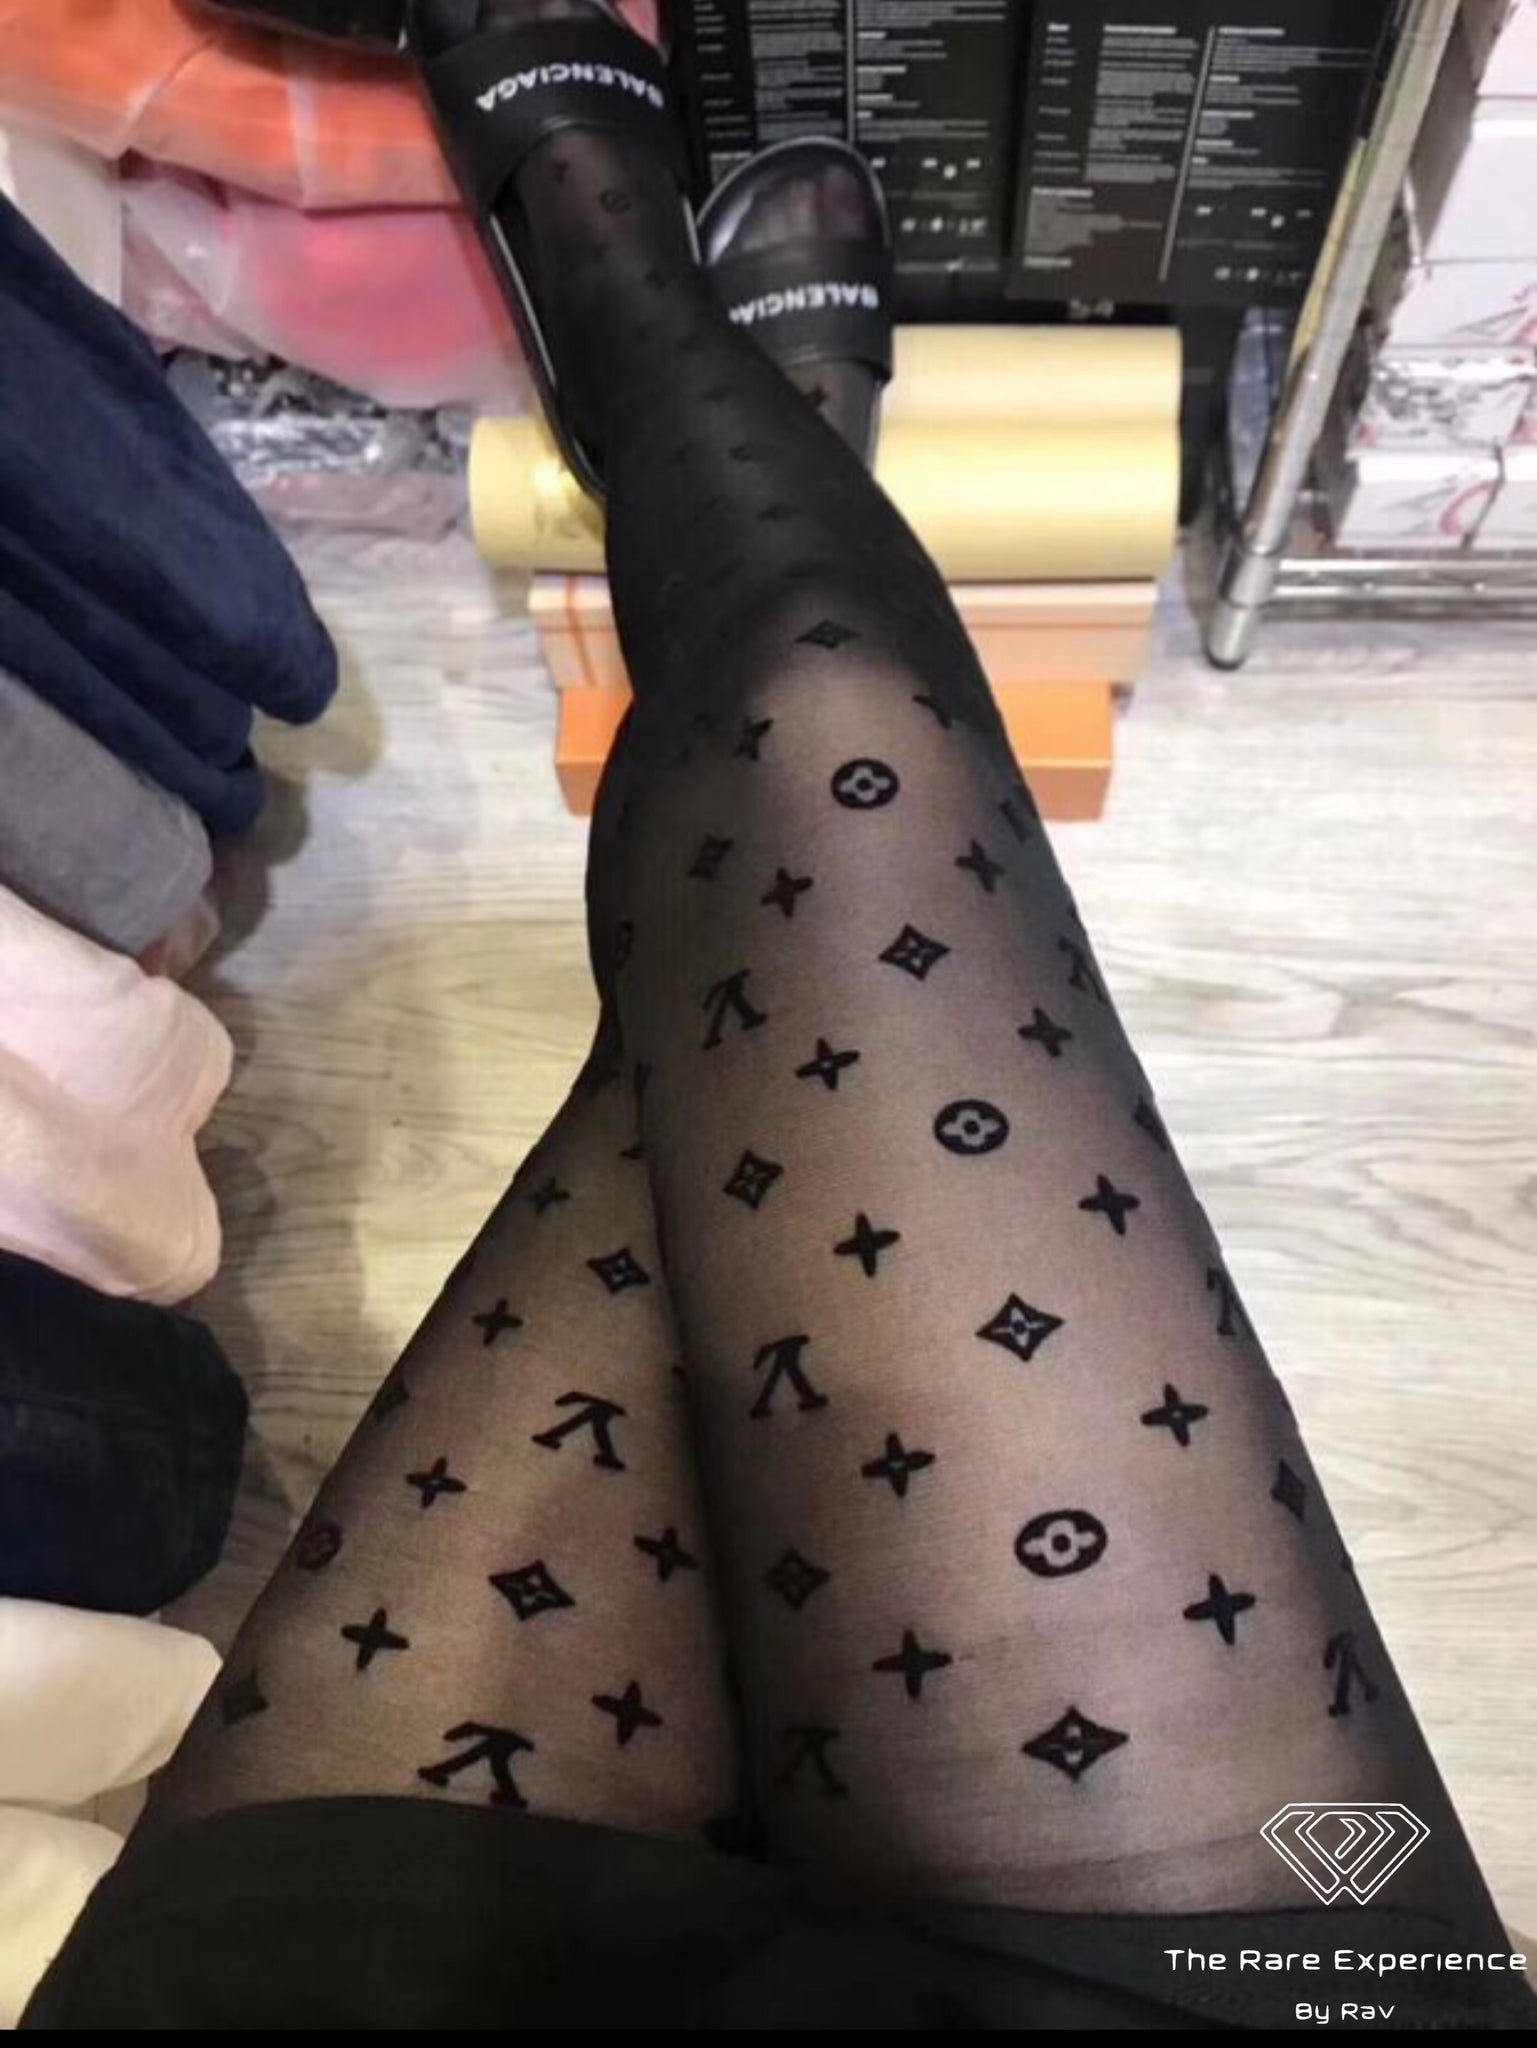 lv stockings for women